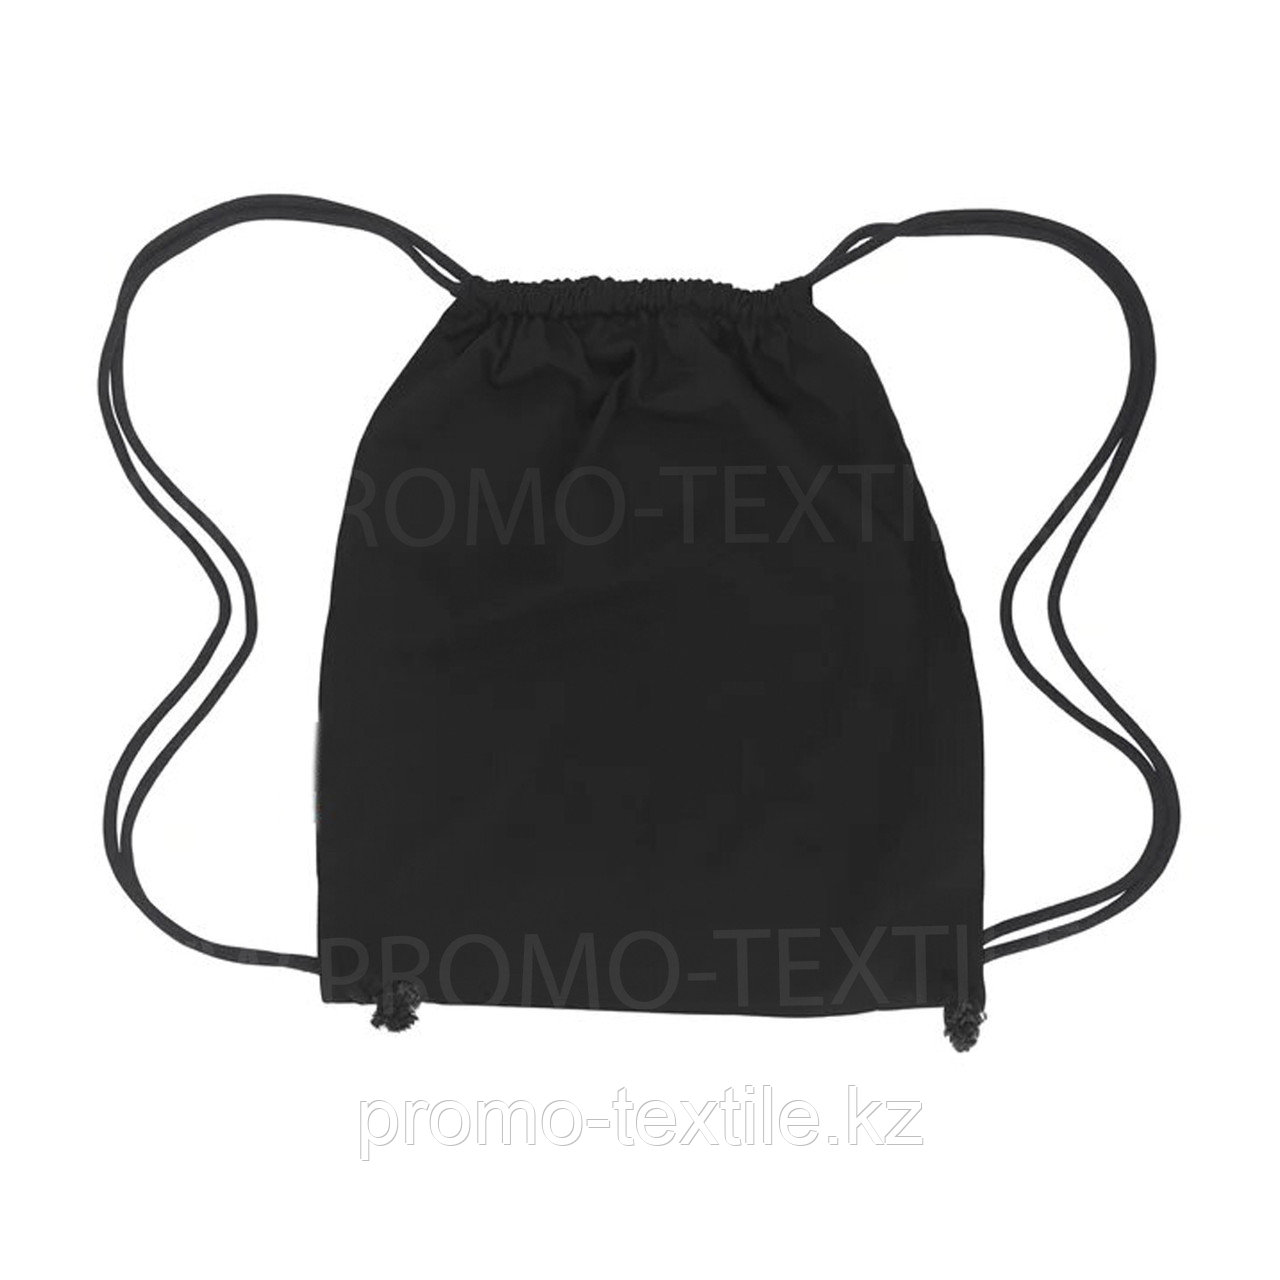 Сумка мешок  черного цвета | Черный сумка - рюкзак для обуви